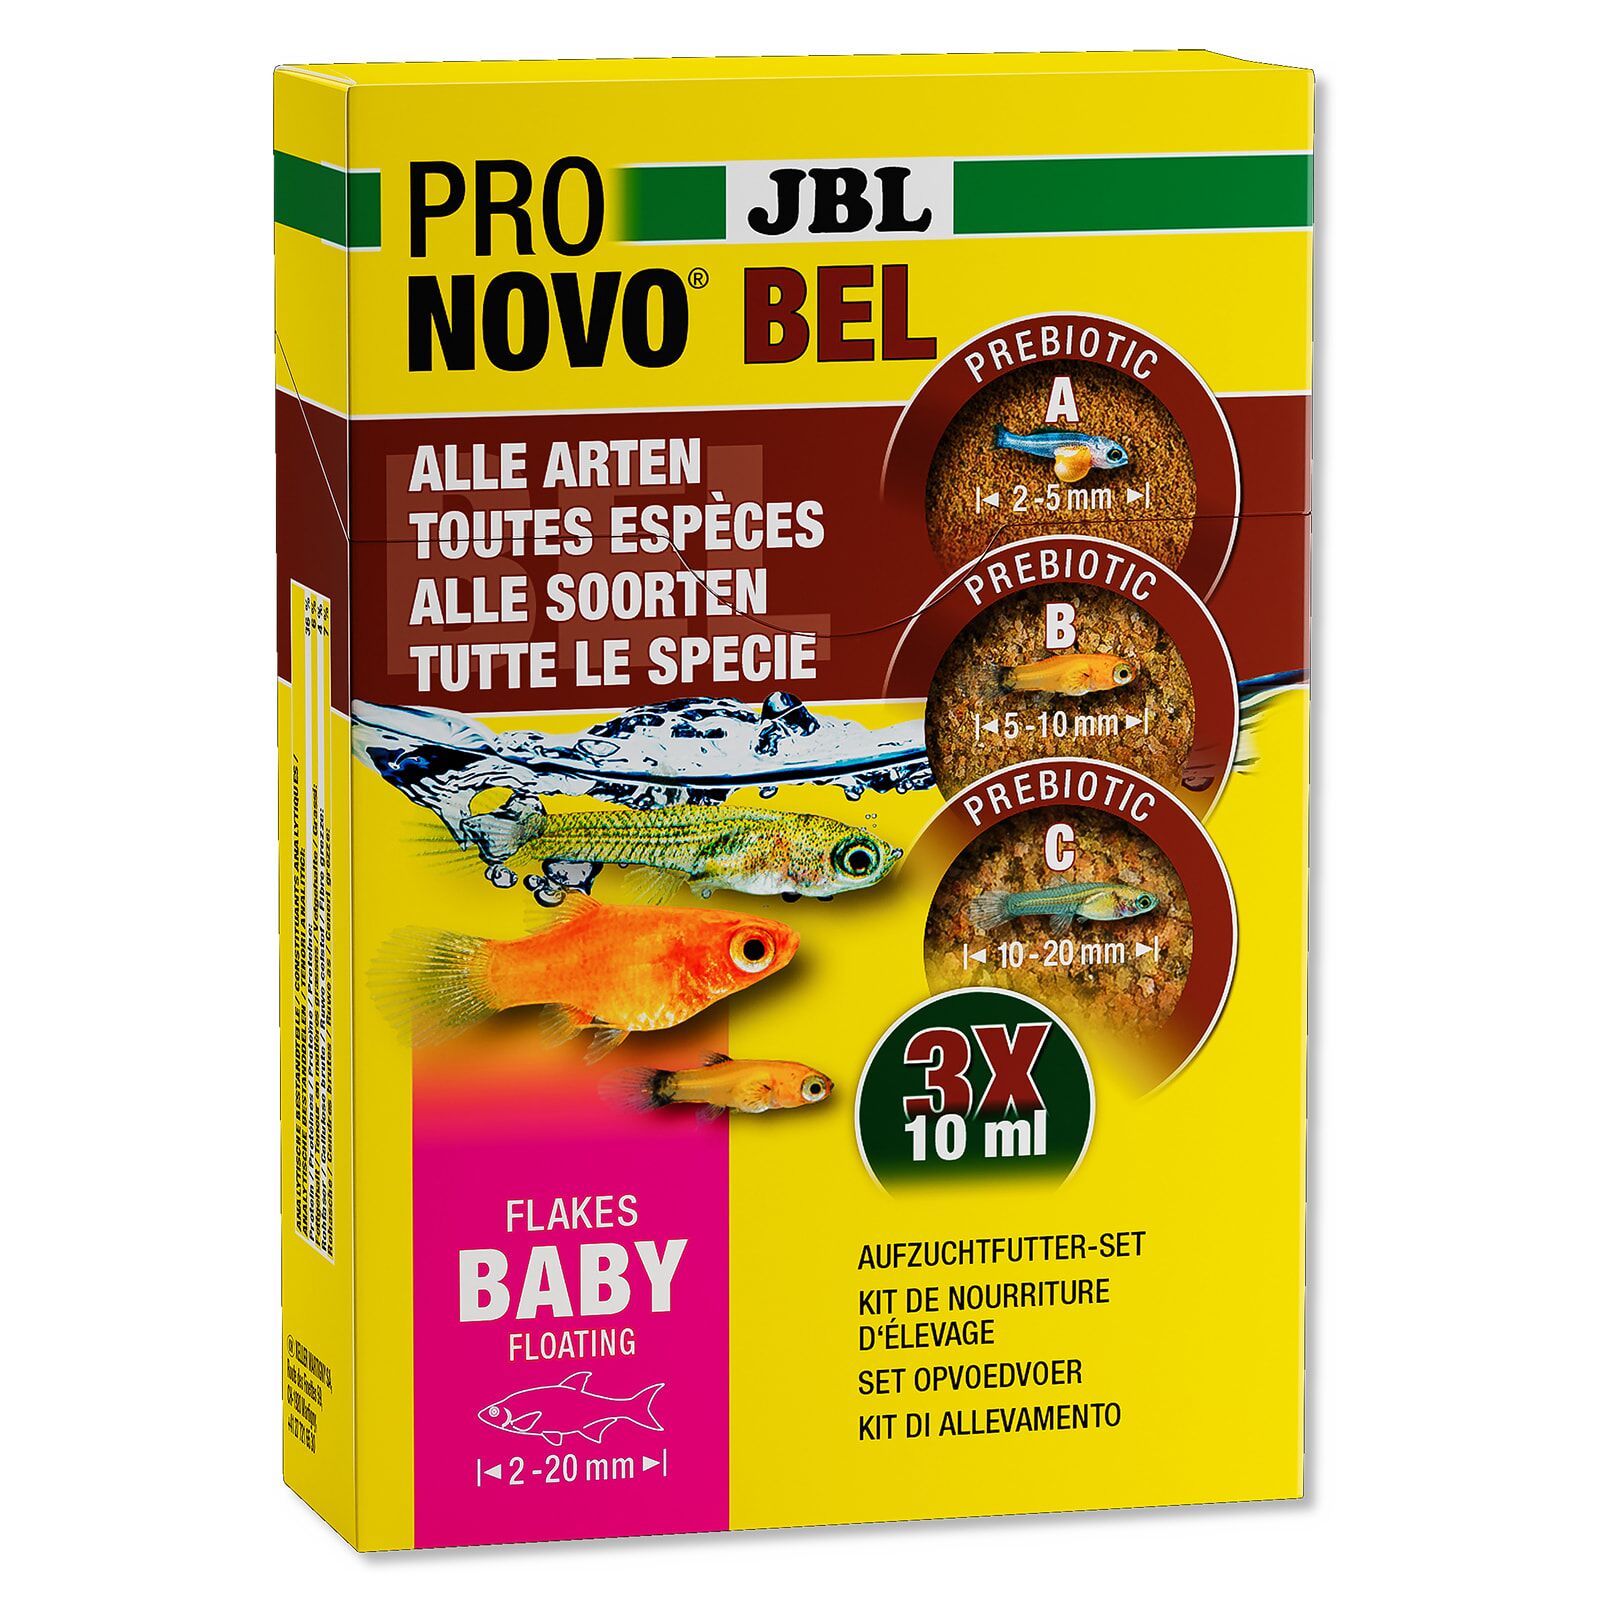 JBL - ProNovo - Bel Baby